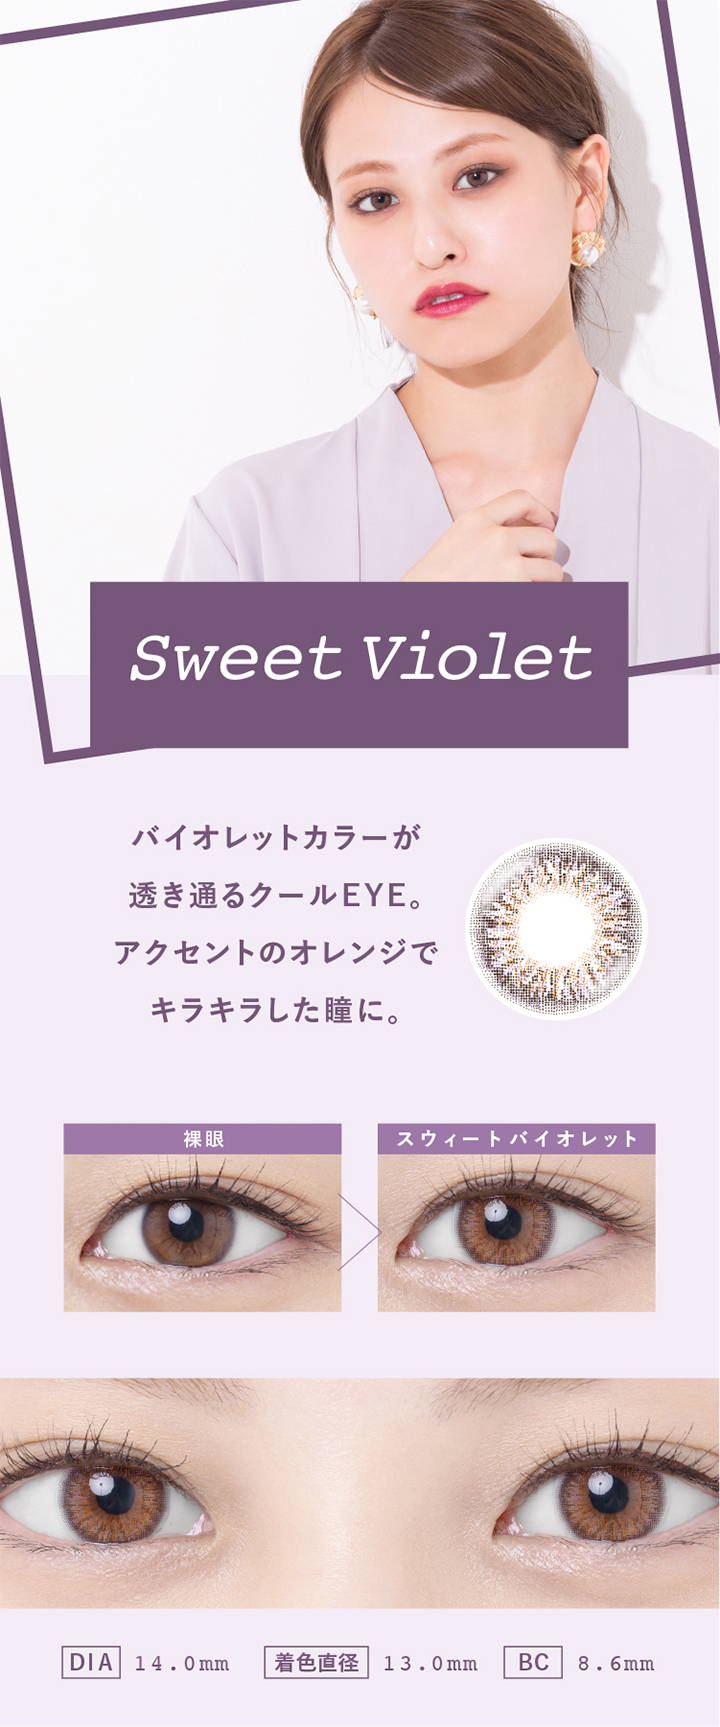 Sweet Violet(スウィートバイオレット),バイオレットカラーが透き通るクールEYE。アクセントのオレンジでキラキラした瞳に,裸眼とスウィートバイオレットの装用写真の比較,DIA14.0mm,着色直径13.0mm,BC8.6mm|スウィートハート(SweetHeart)コンタクトレンズ